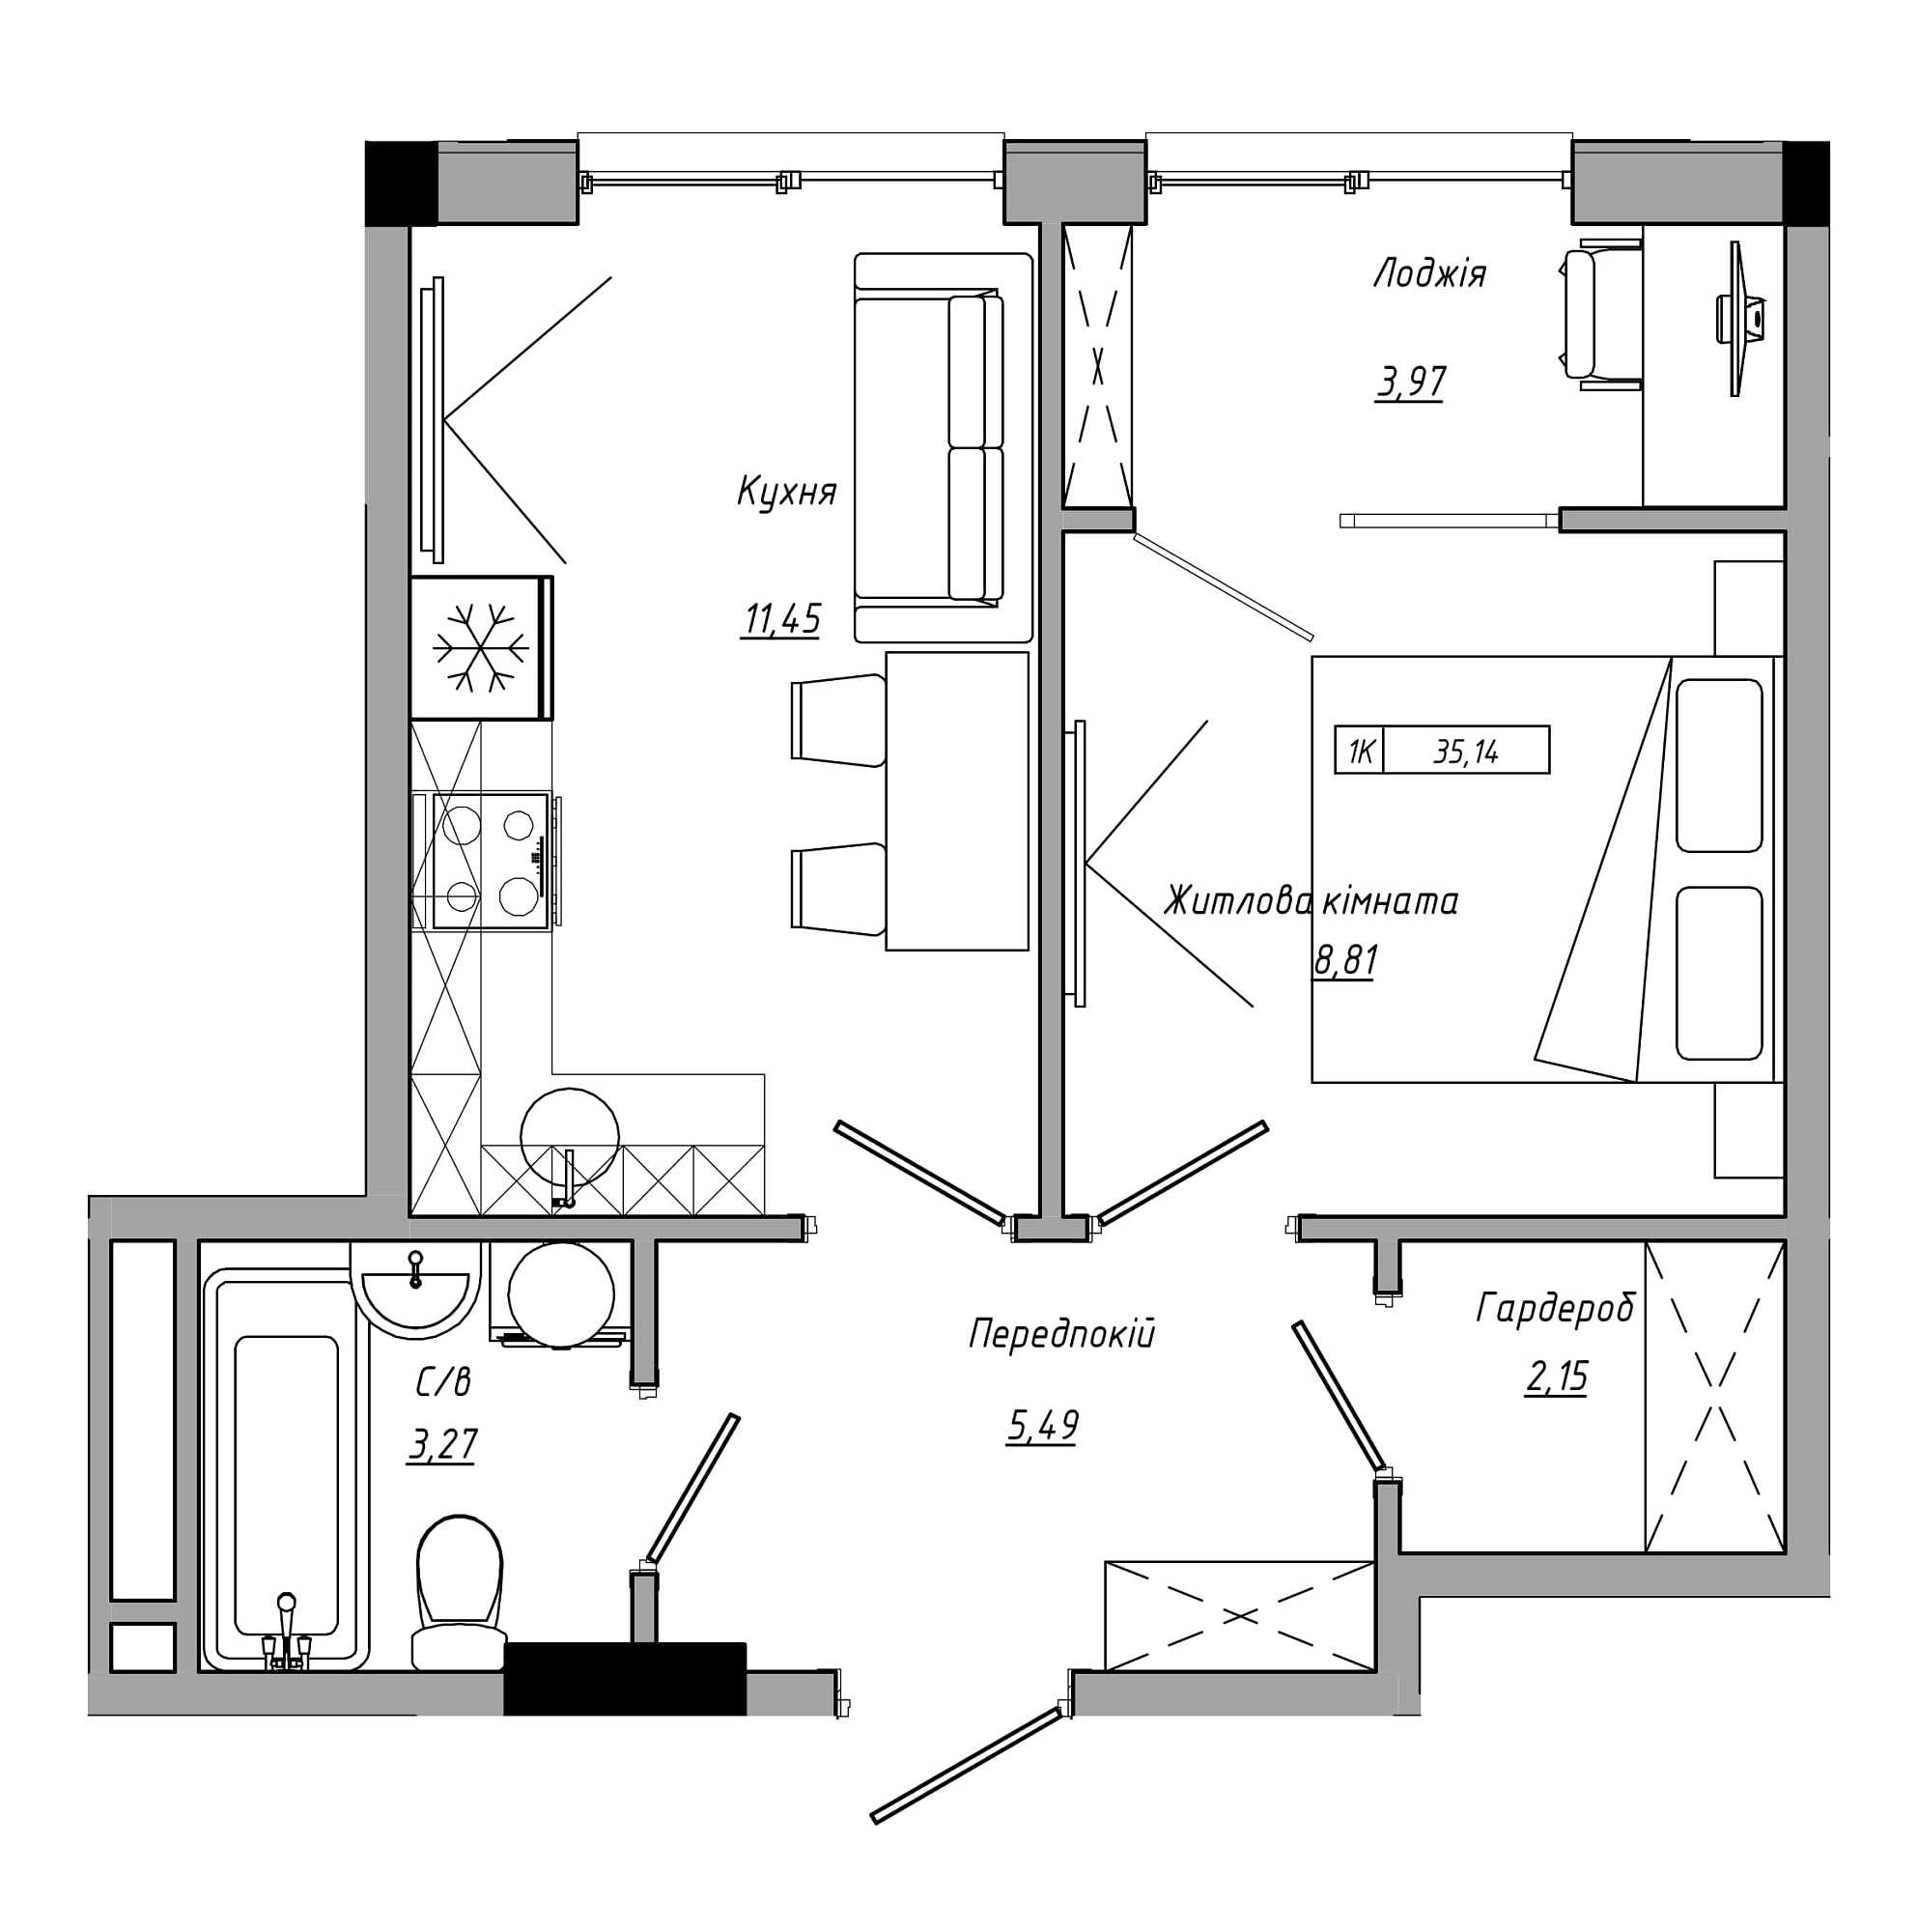 Планировка 1-к квартира площей 35.14м2, AB-21-09/00013.